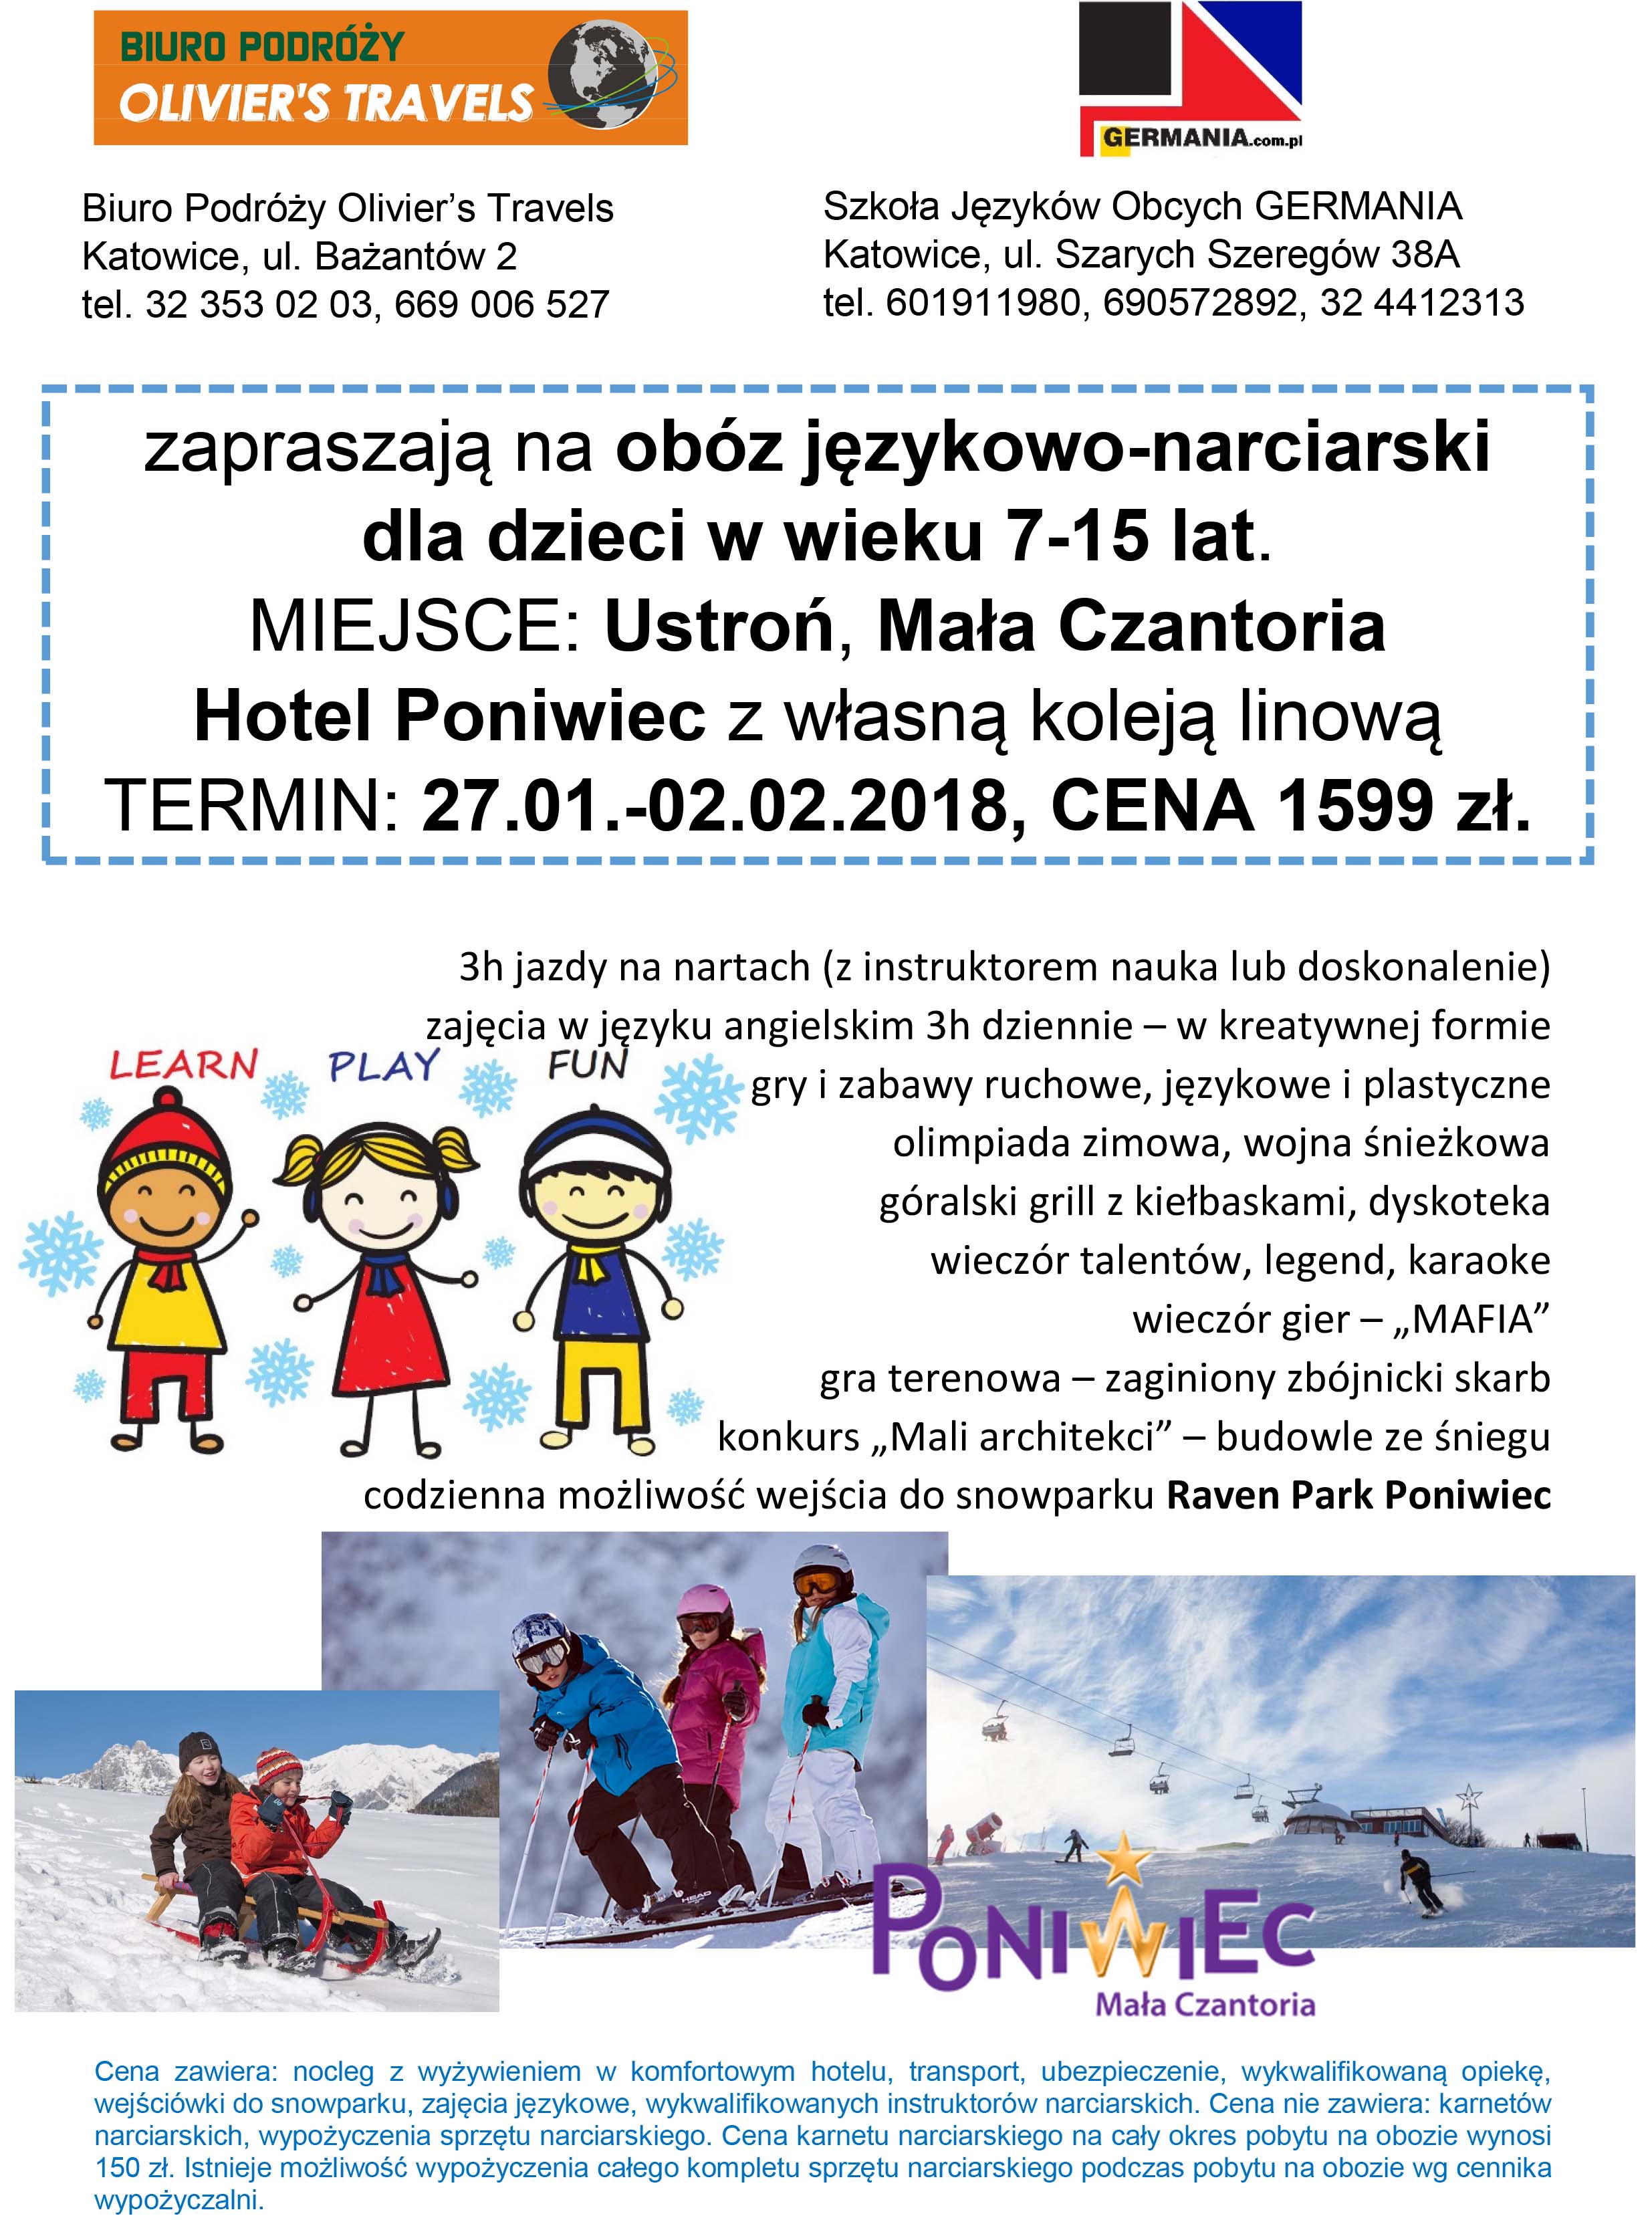 Zimowy obóz językowo-narciarski, Katowice. Zapisy